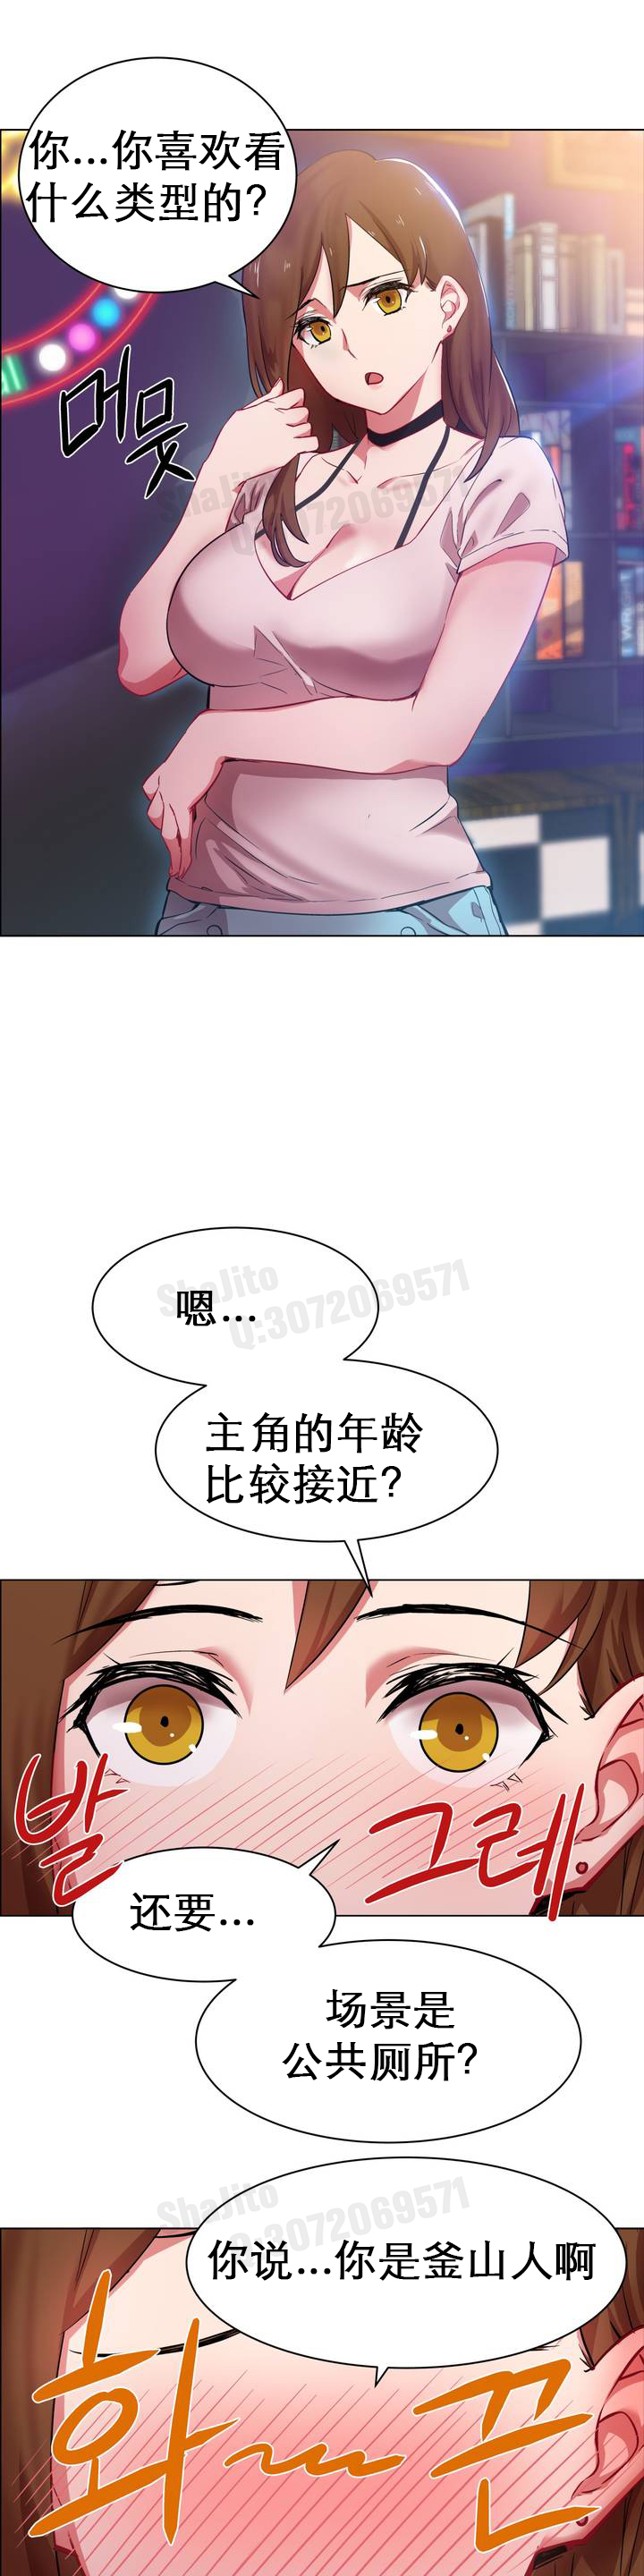 rental girls AV租片女郎 1-3 Chinese 